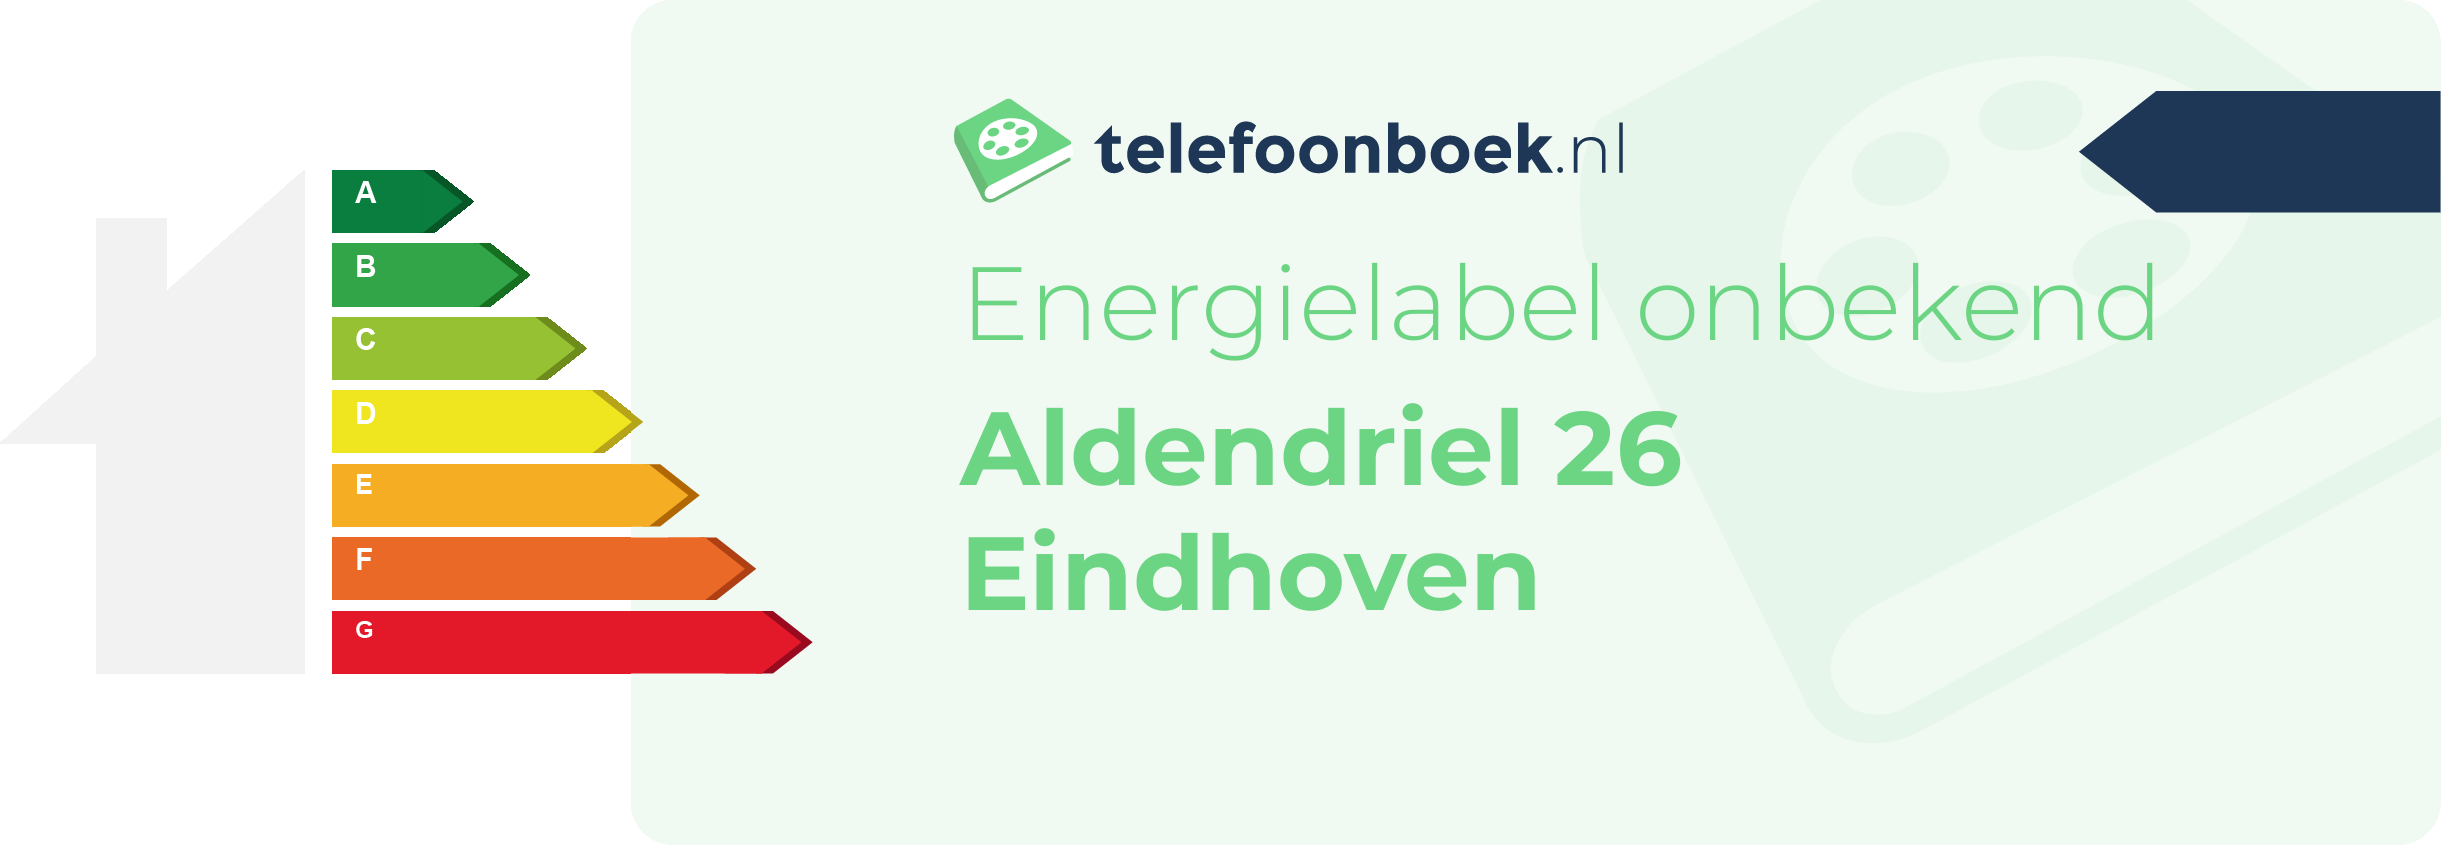 Energielabel Aldendriel 26 Eindhoven